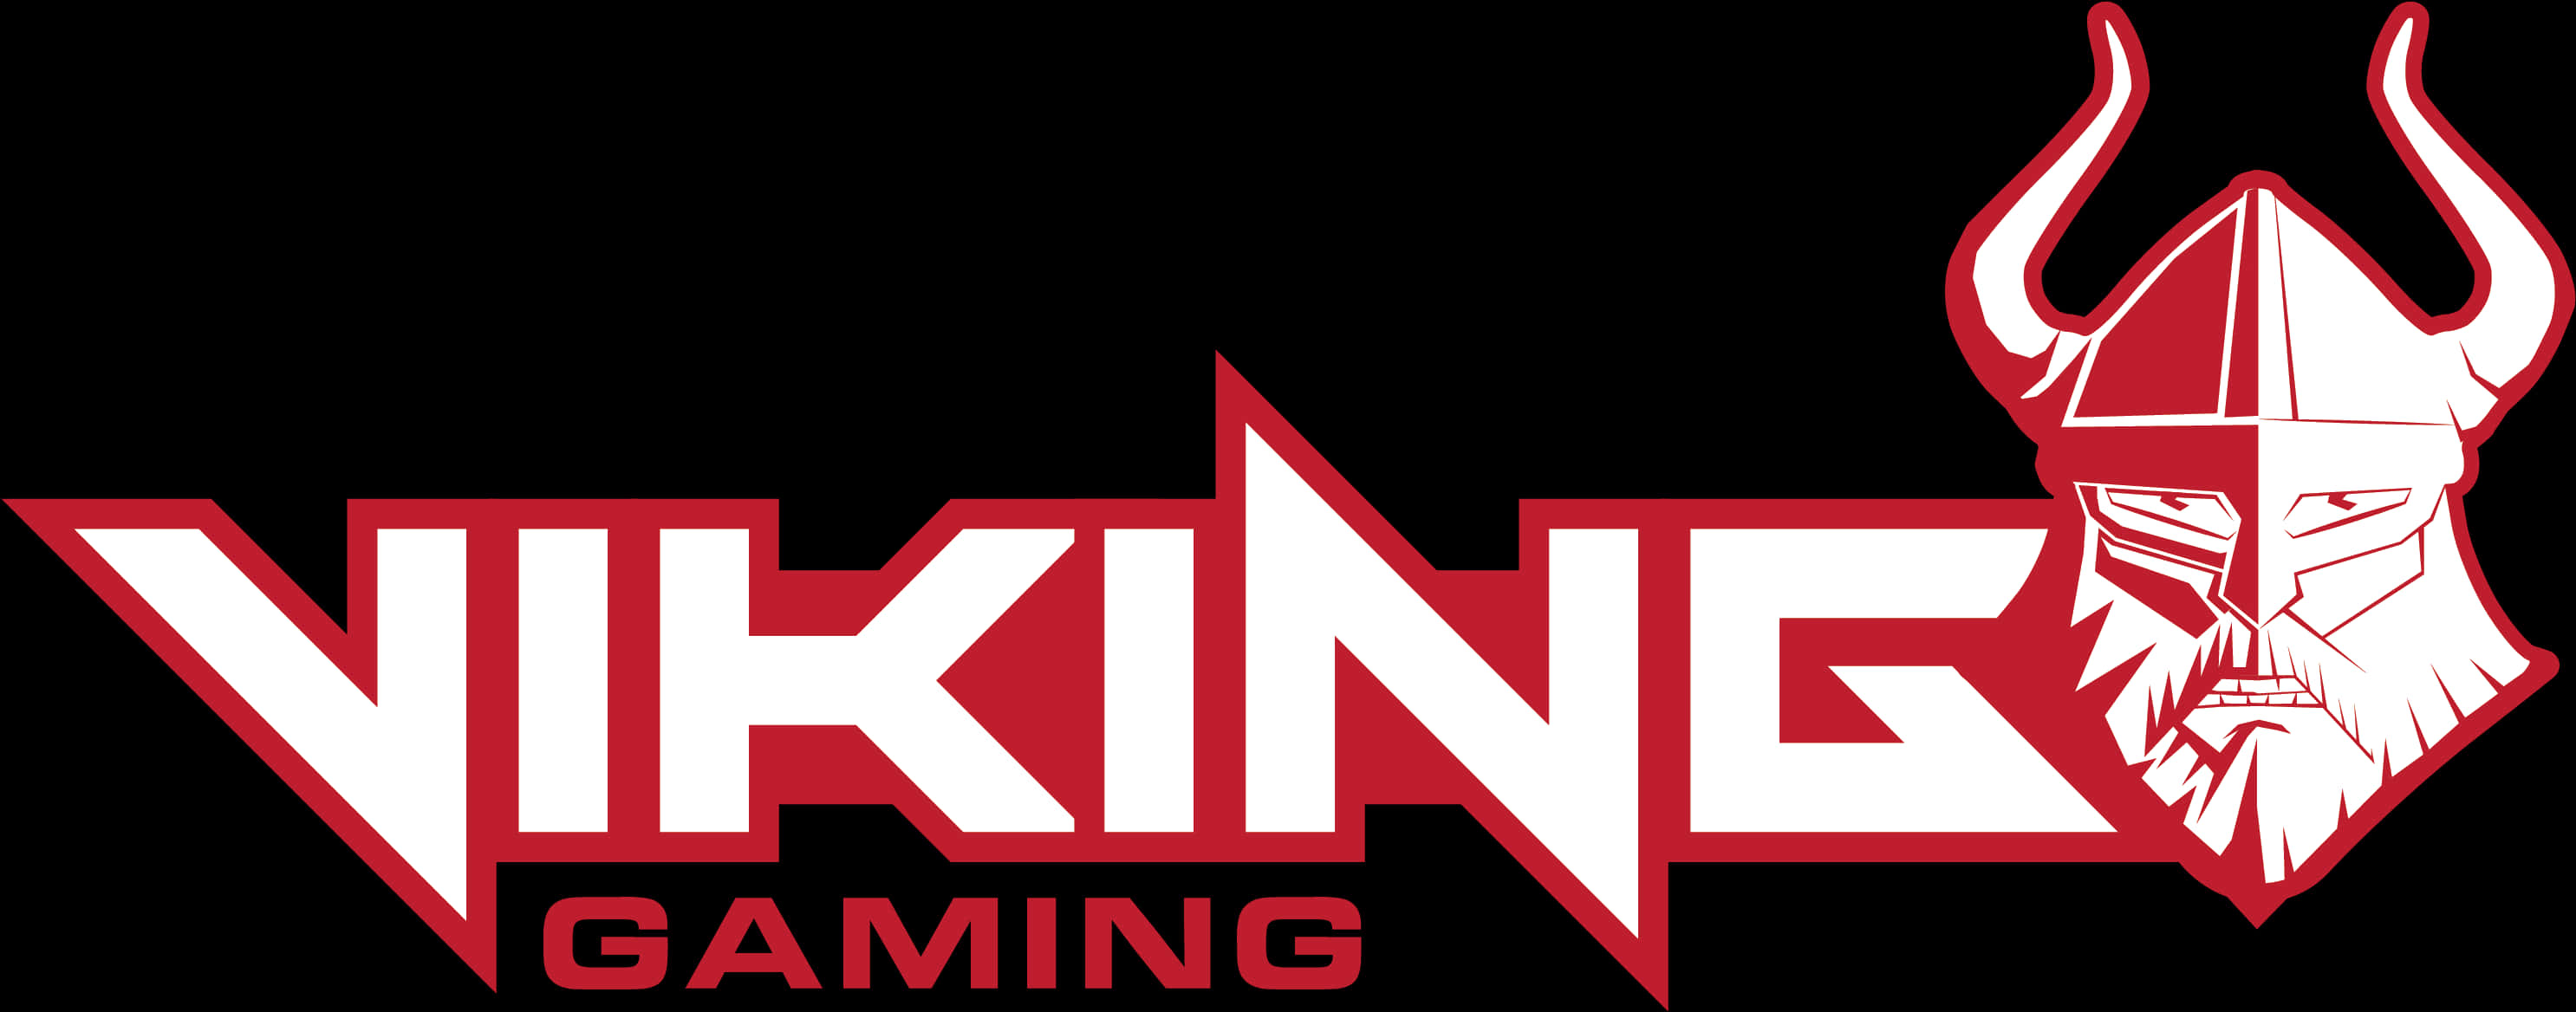 Viking_ Gaming_ Logo PNG image